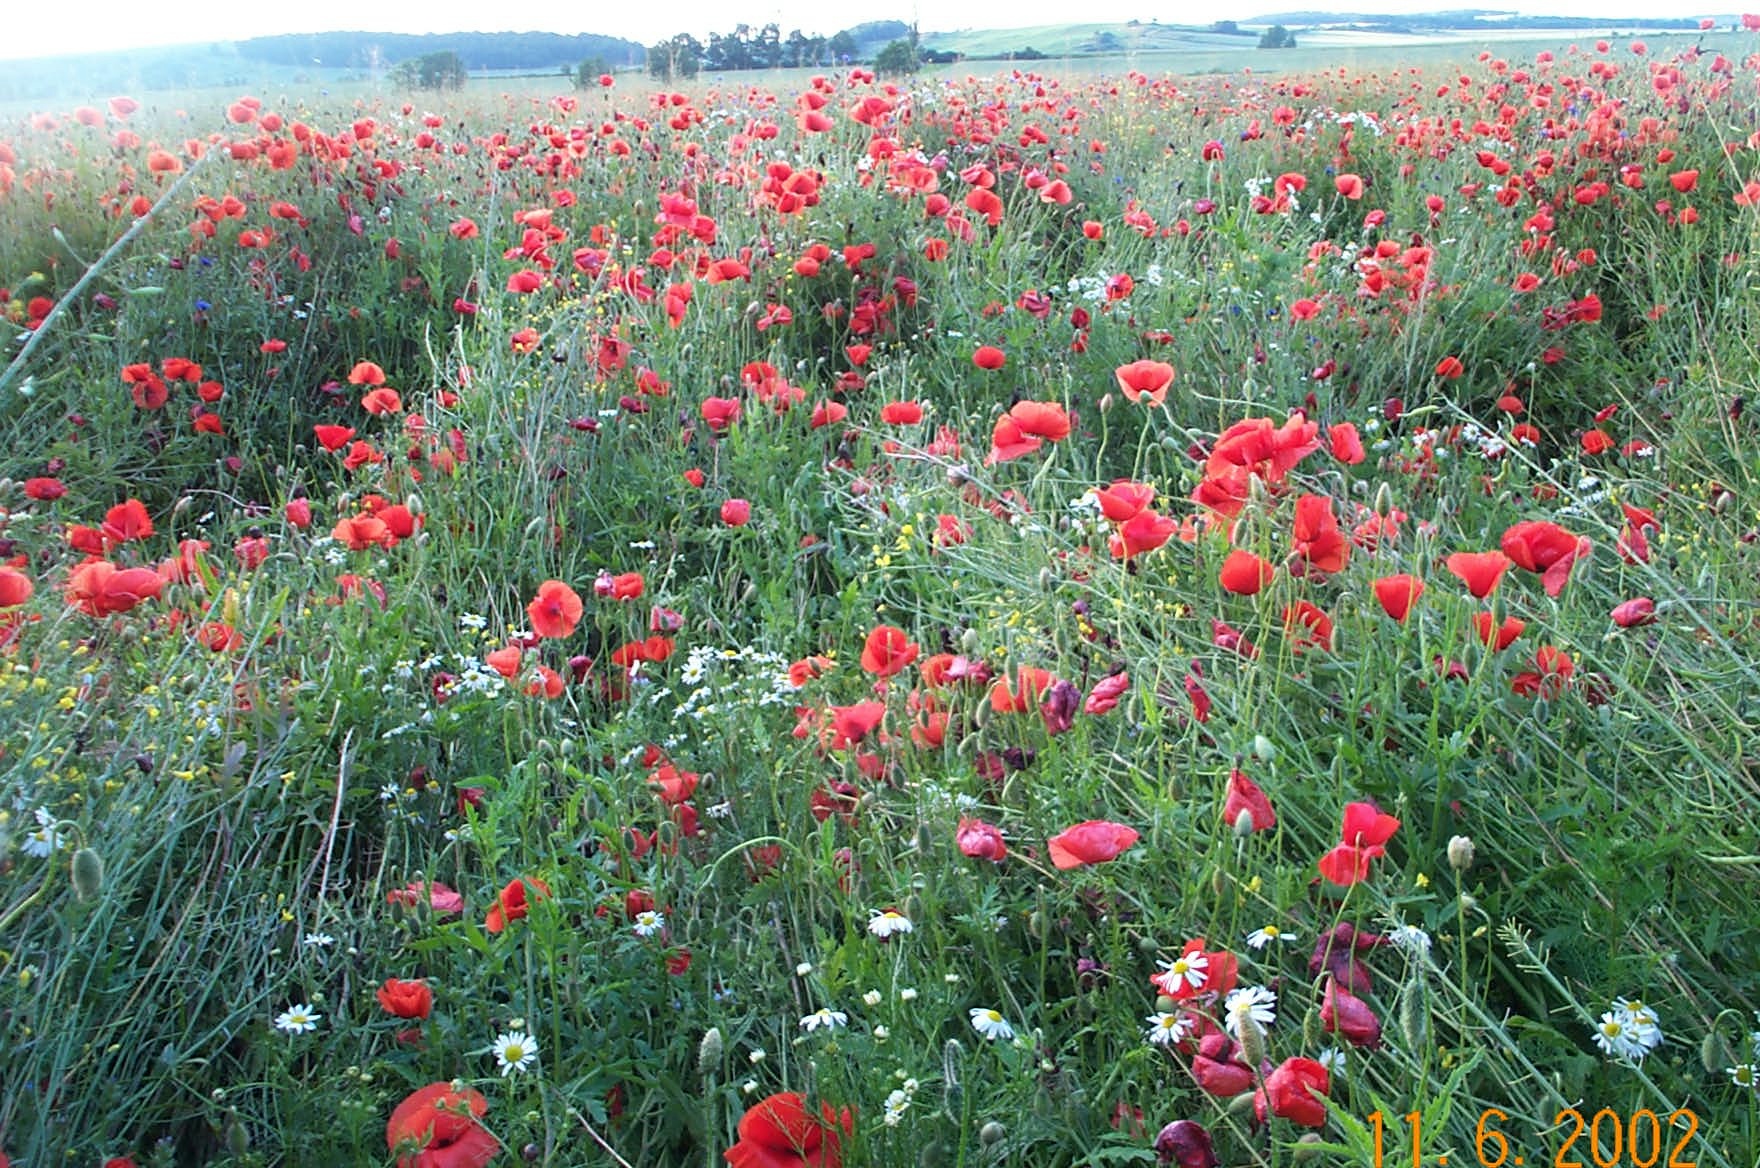 Wildrich Weltreise Im Frhsommer sehe ich viele solcher wilden Blumenwiesen in Polen